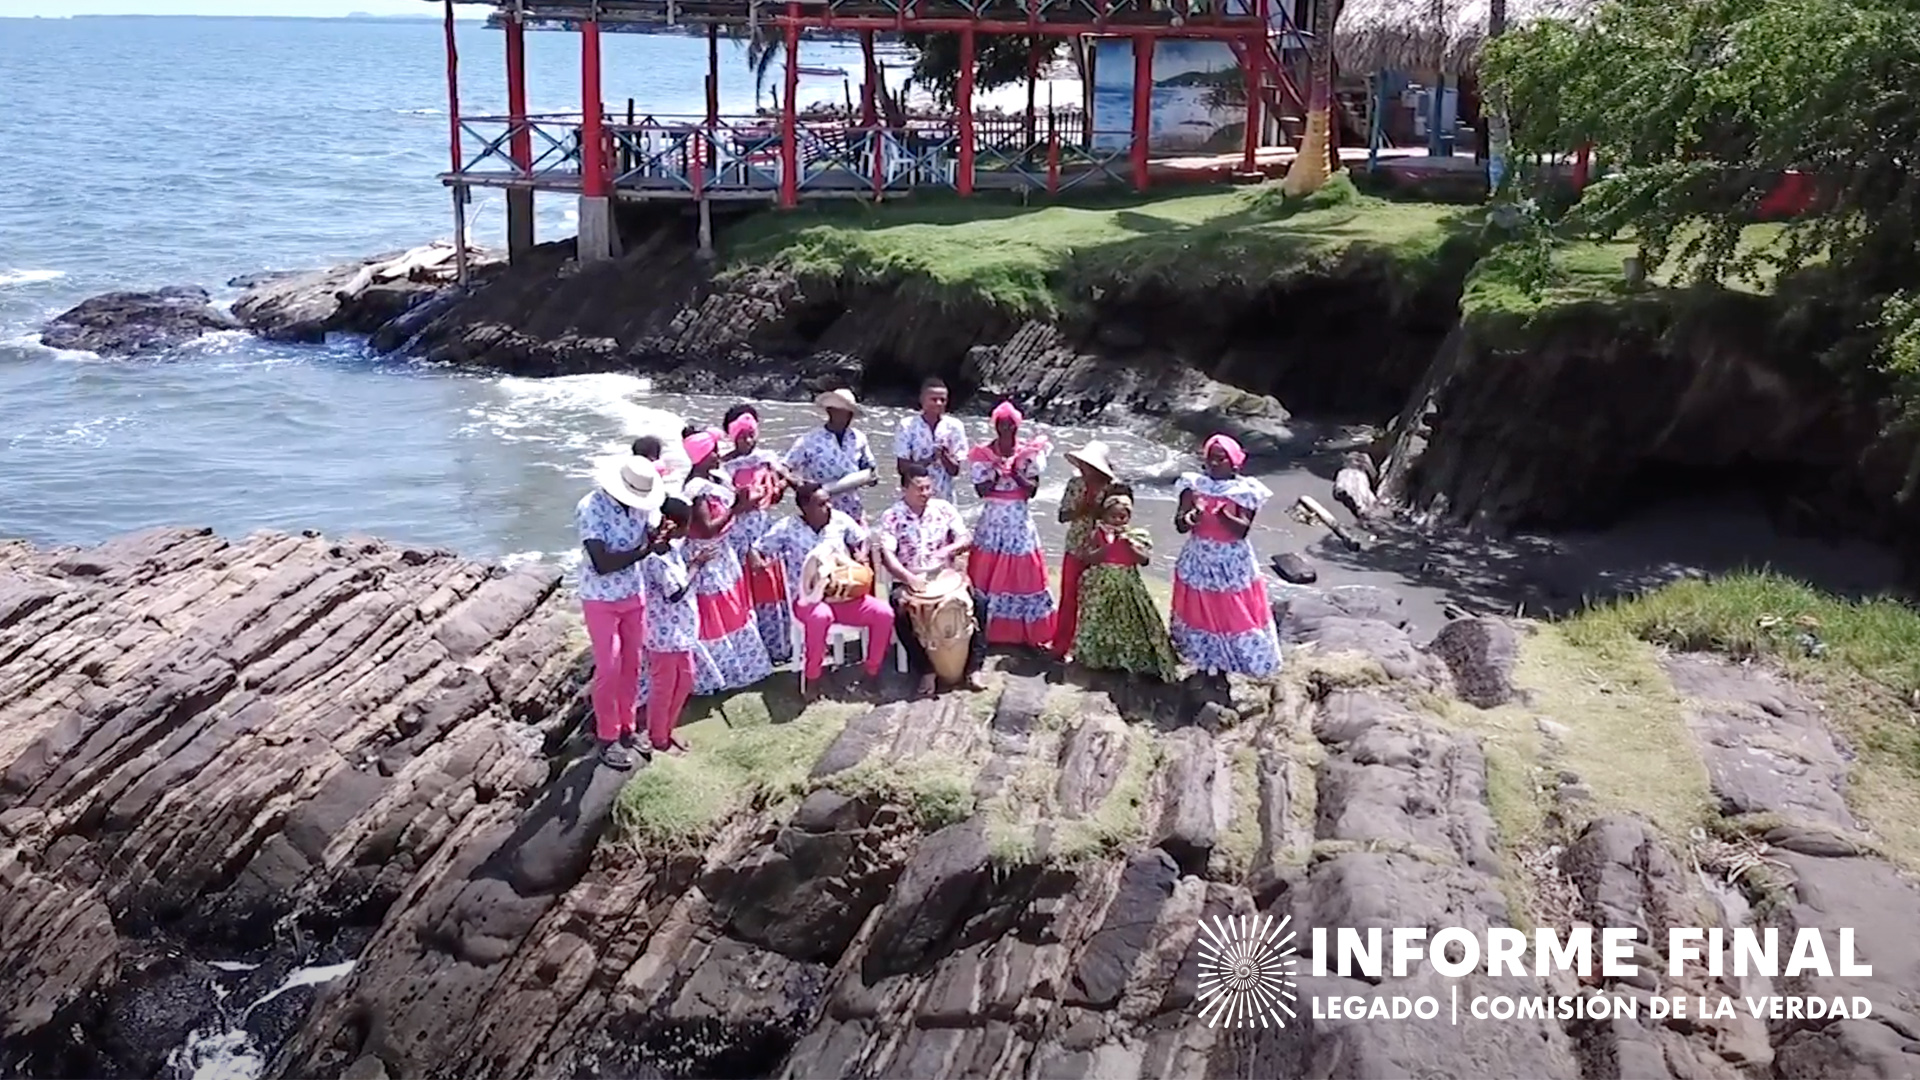  Grupo de personas con tambores y vestidos tradicionales cantando en una piedra a la orilla del mar